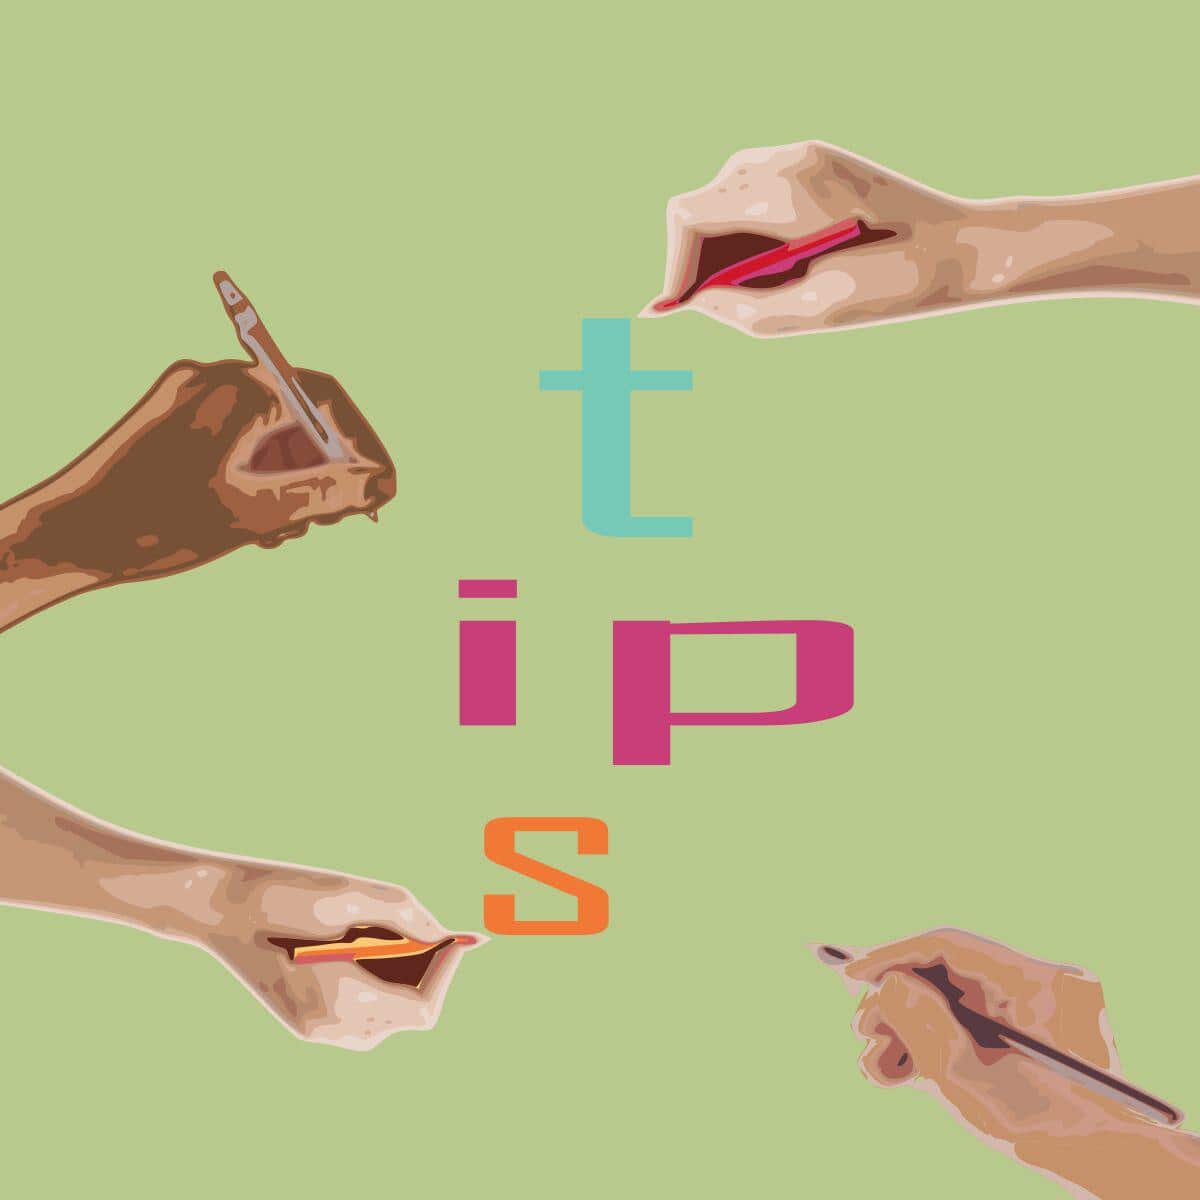 Manos escribiendo la palabra "tips"